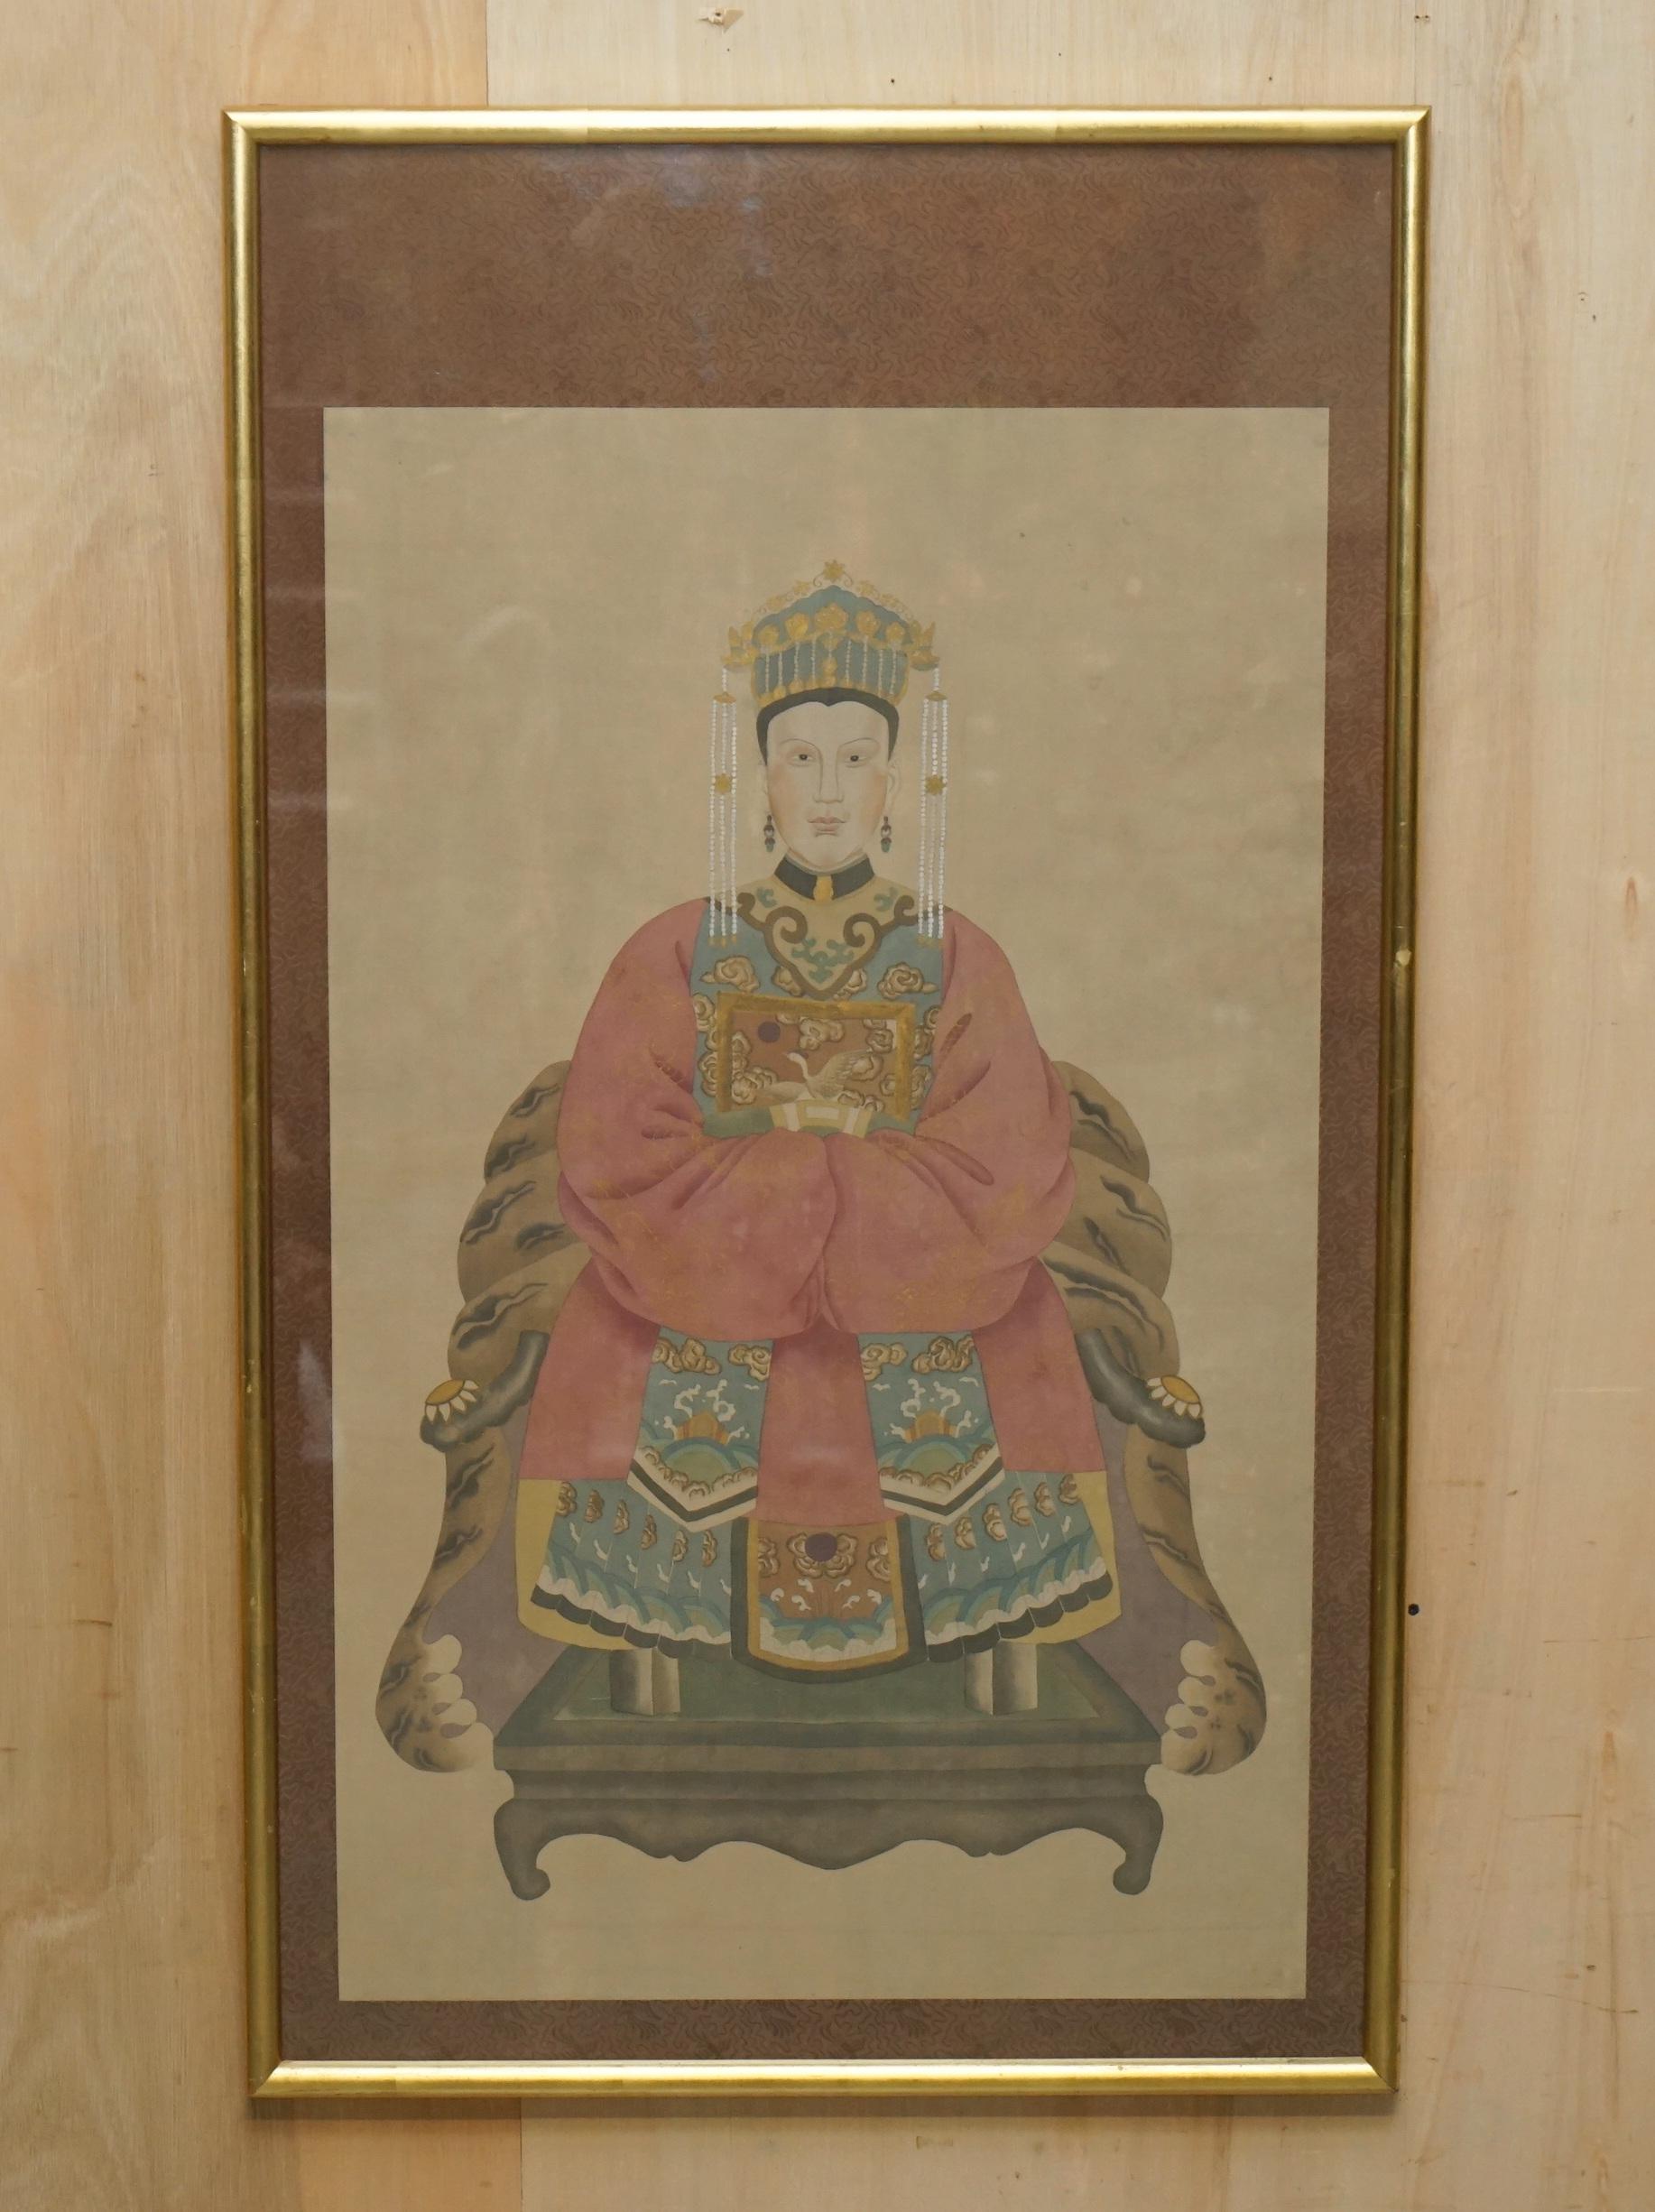 Wir freuen uns, dieses schöne Paar antiker chinesischer Ahnenporträts auf dem Originalpapier mit schönem verglasten Rahmen zum Verkauf anbieten zu können

Ich habe eine kleine Auswahl davon unter meinen anderen Artikeln aufgelistet, es gibt einige